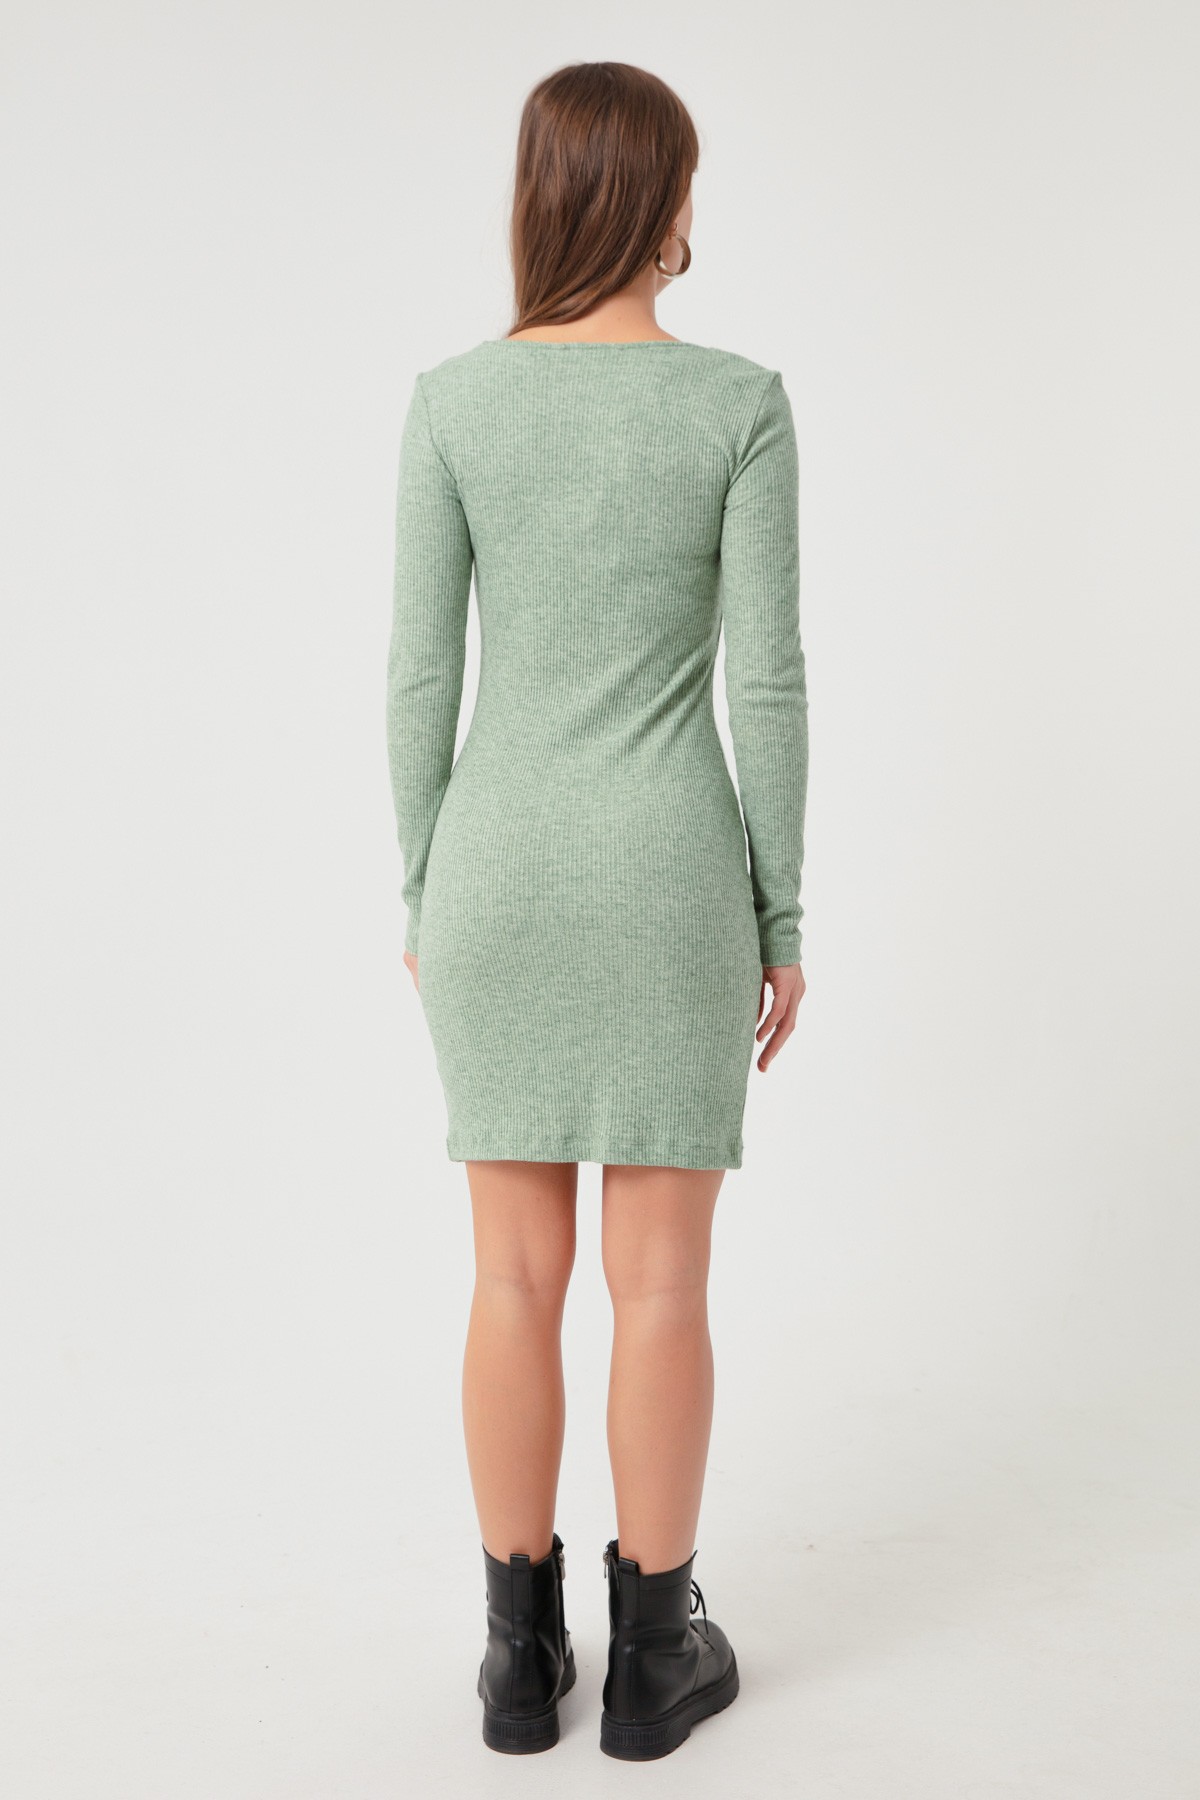 Kadın Mini Örme Elbise - Mint Yeşili